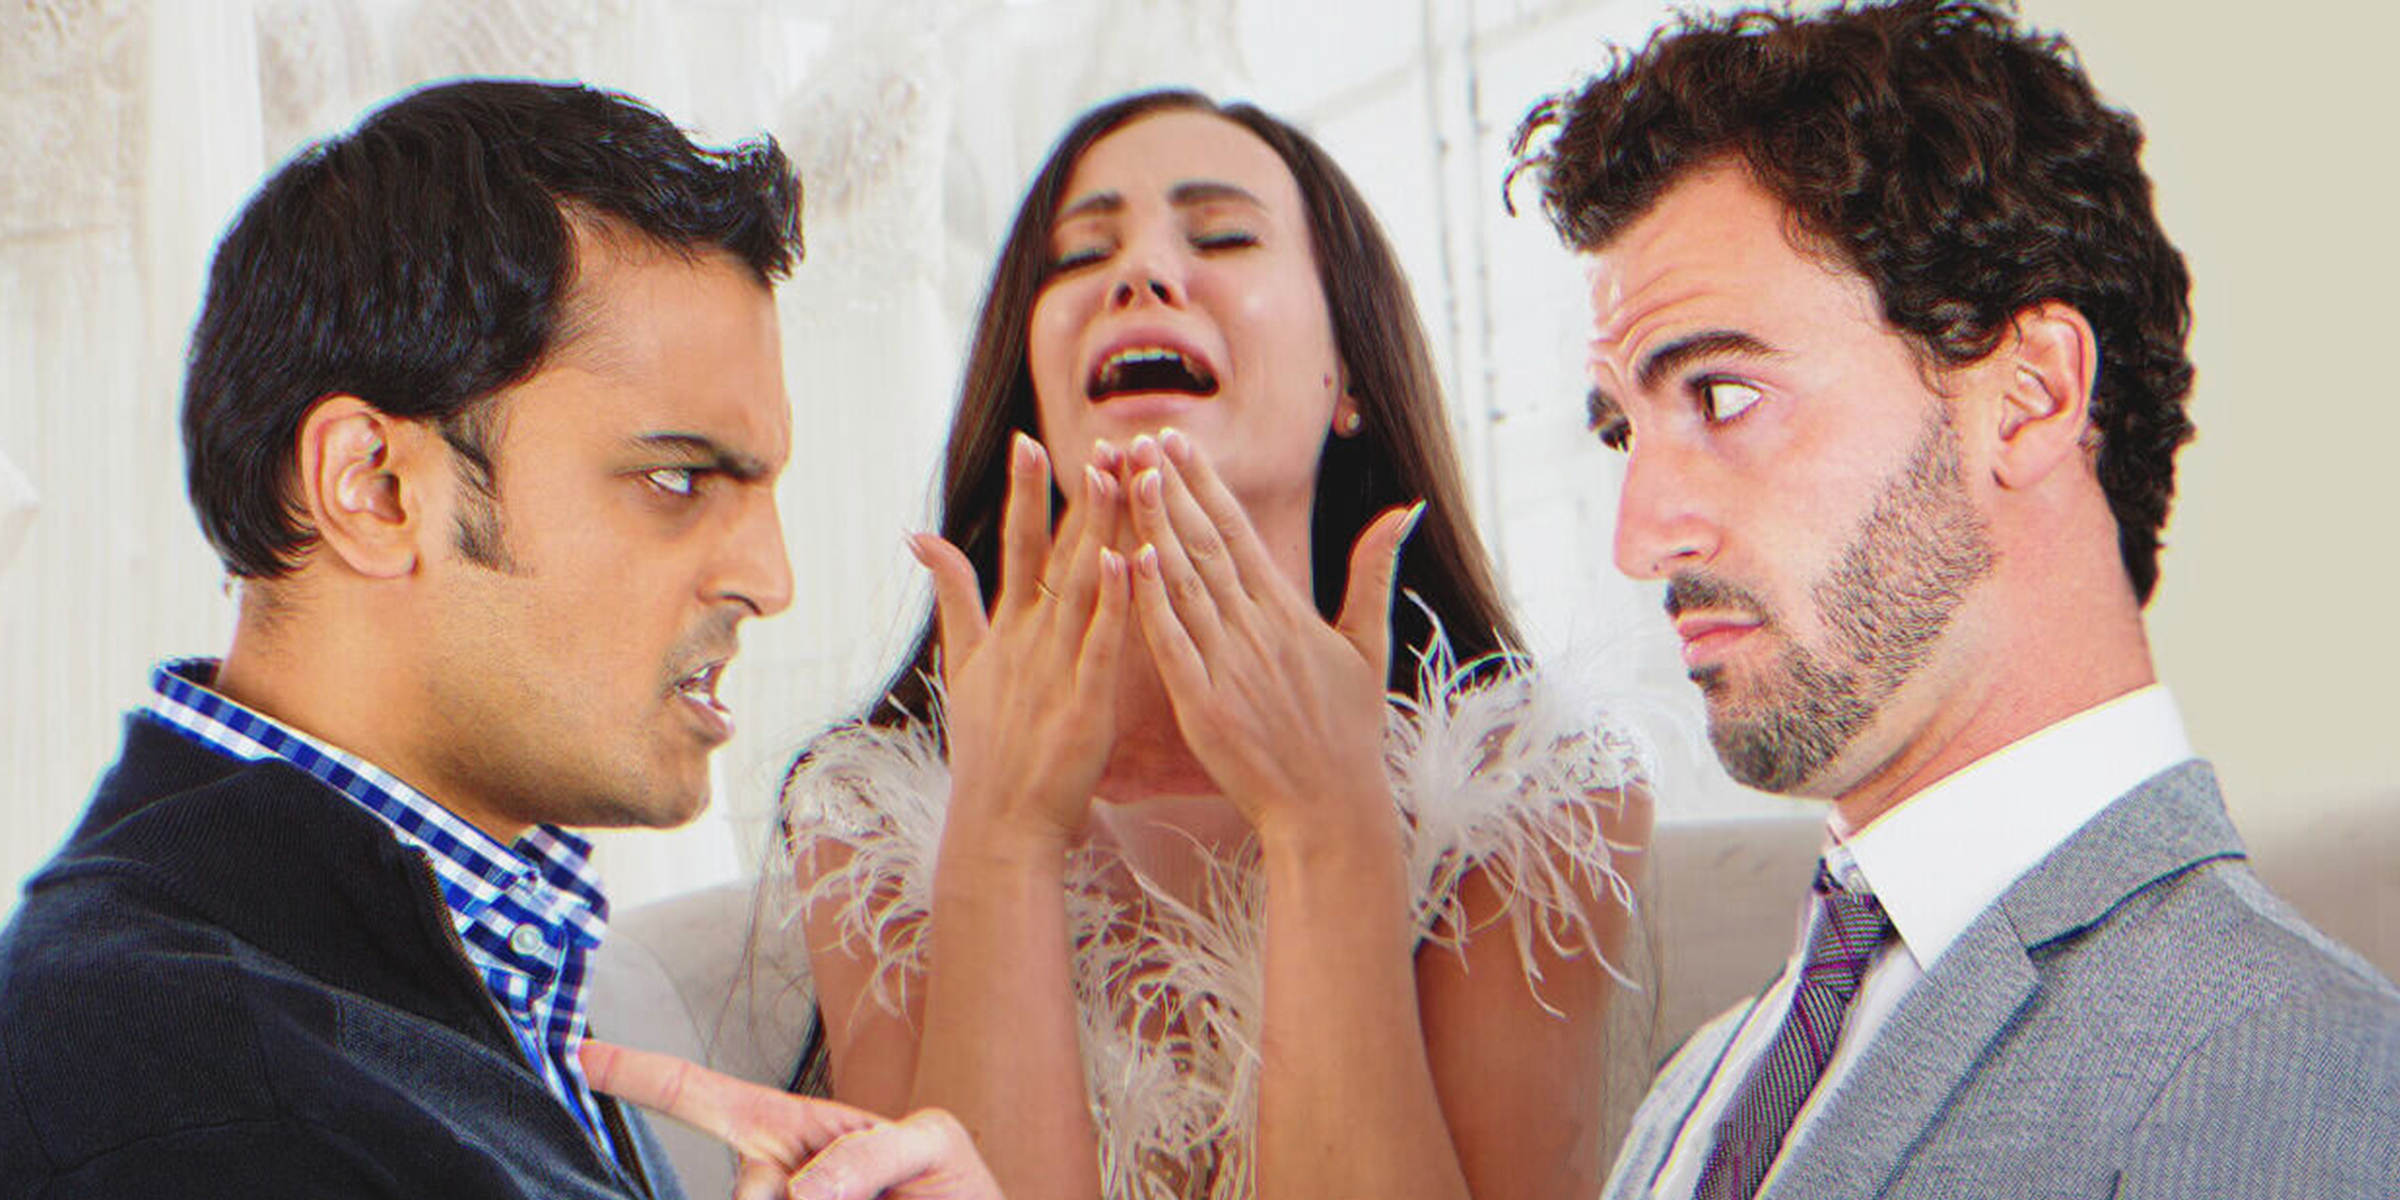 La tension monte entre les frères lors du mariage de l'un d'entre eux | Source : Shutterstock